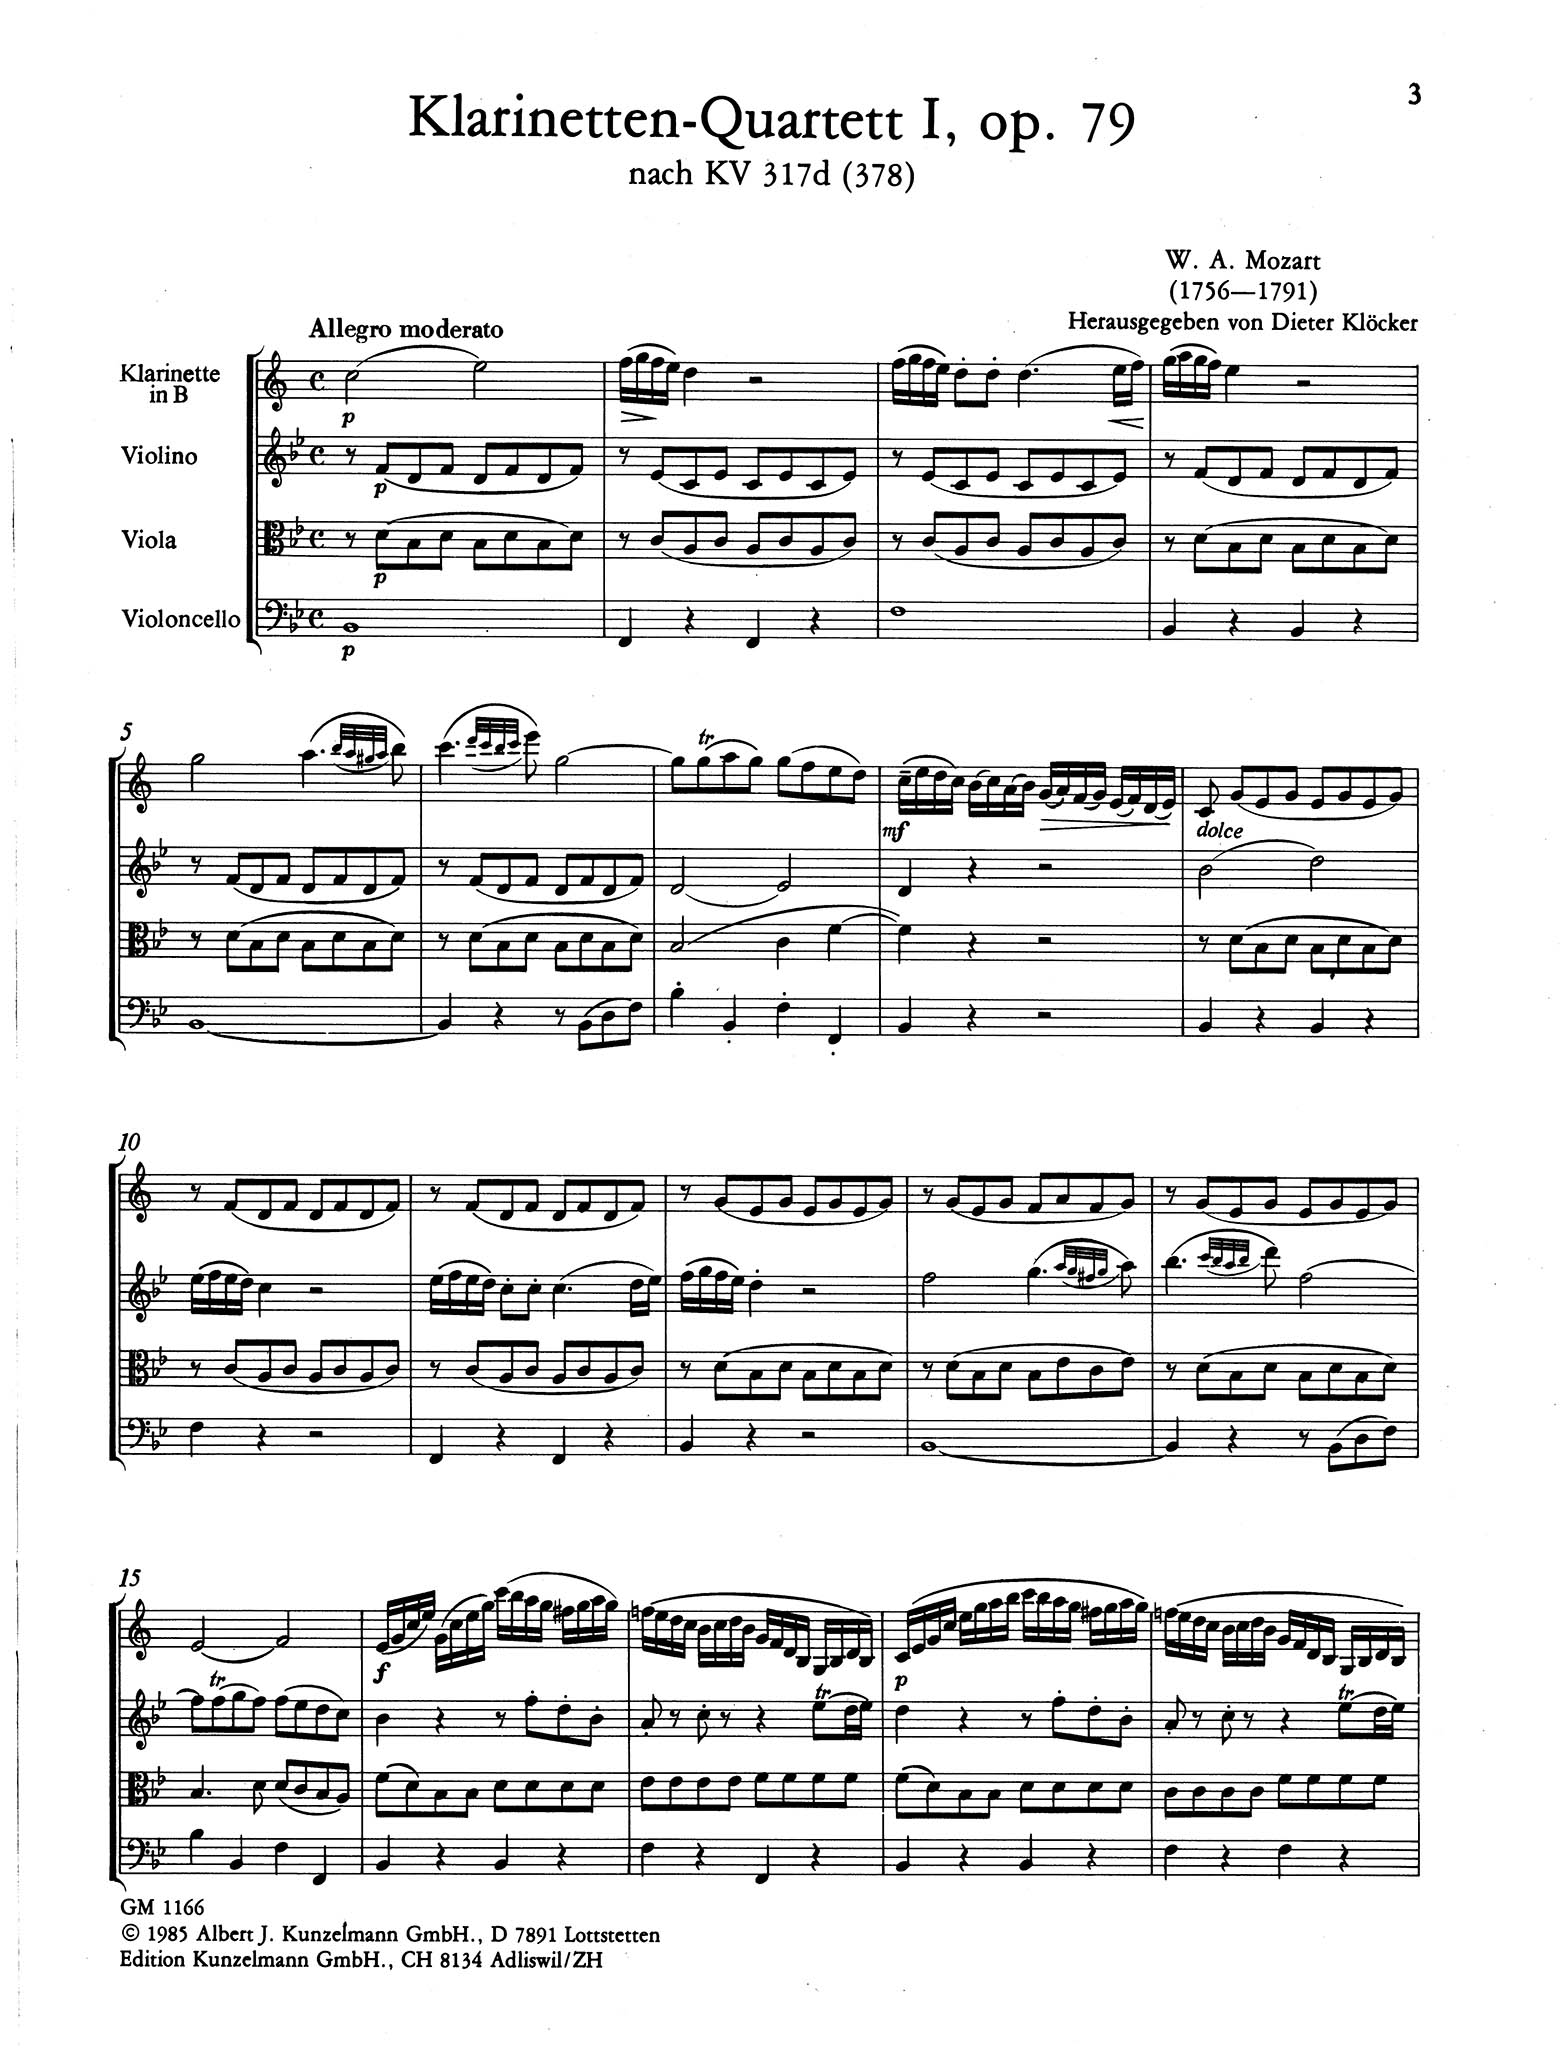 Violin Sonata No. 26 in B-Flat Major, K. 378/317d - Movement 1